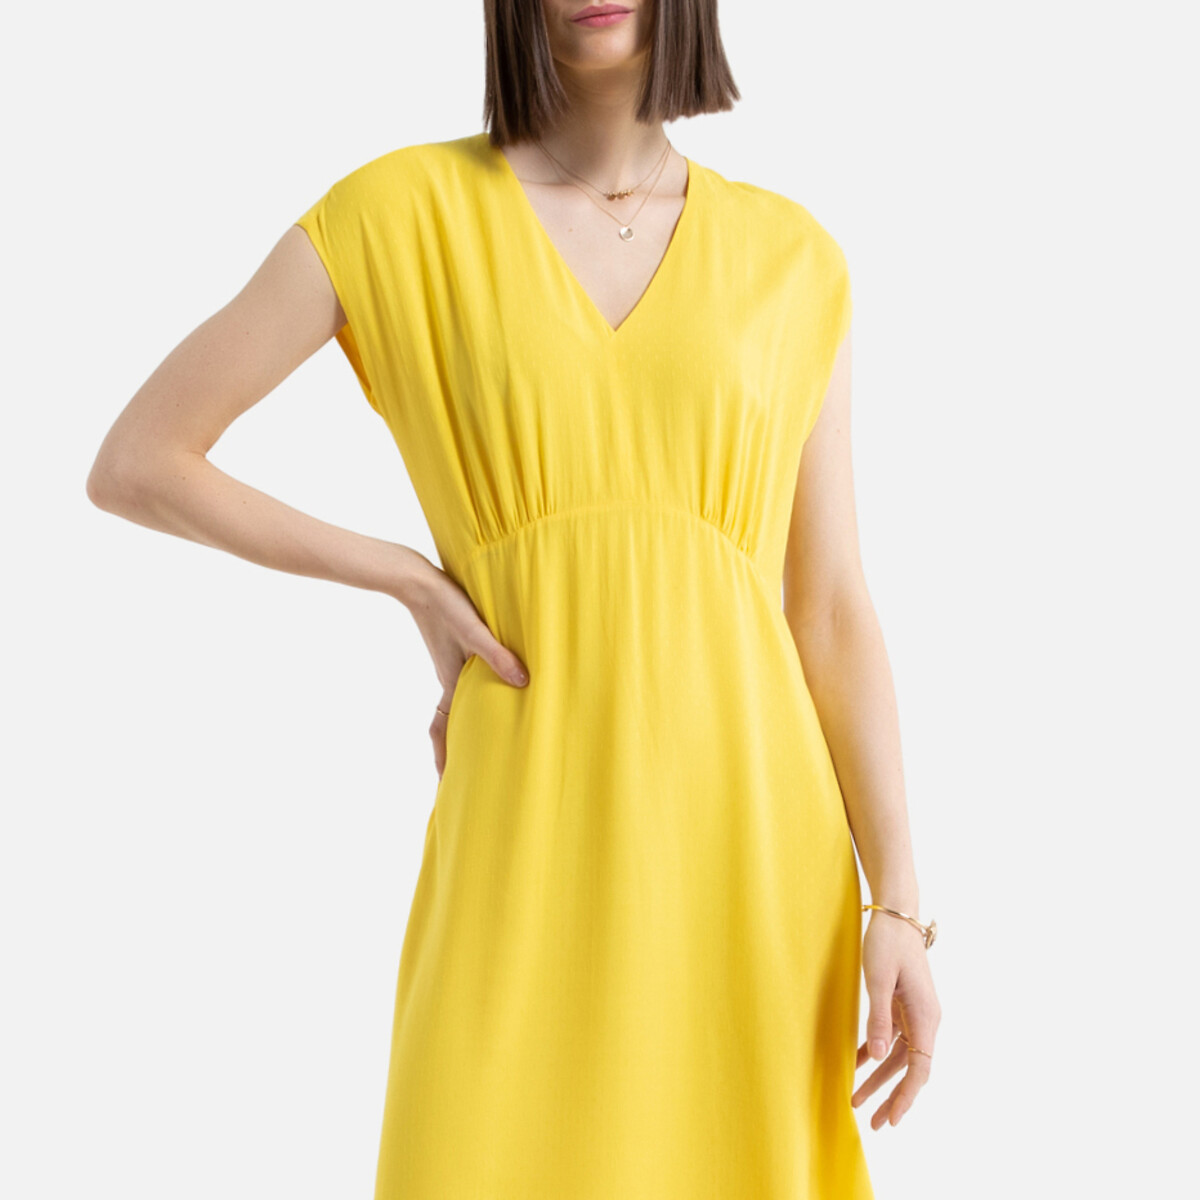 Платье La Redoute Длинное без рукавов 36 (FR) - 42 (RUS) желтый, размер 36 (FR) - 42 (RUS) Длинное без рукавов 36 (FR) - 42 (RUS) желтый - фото 4